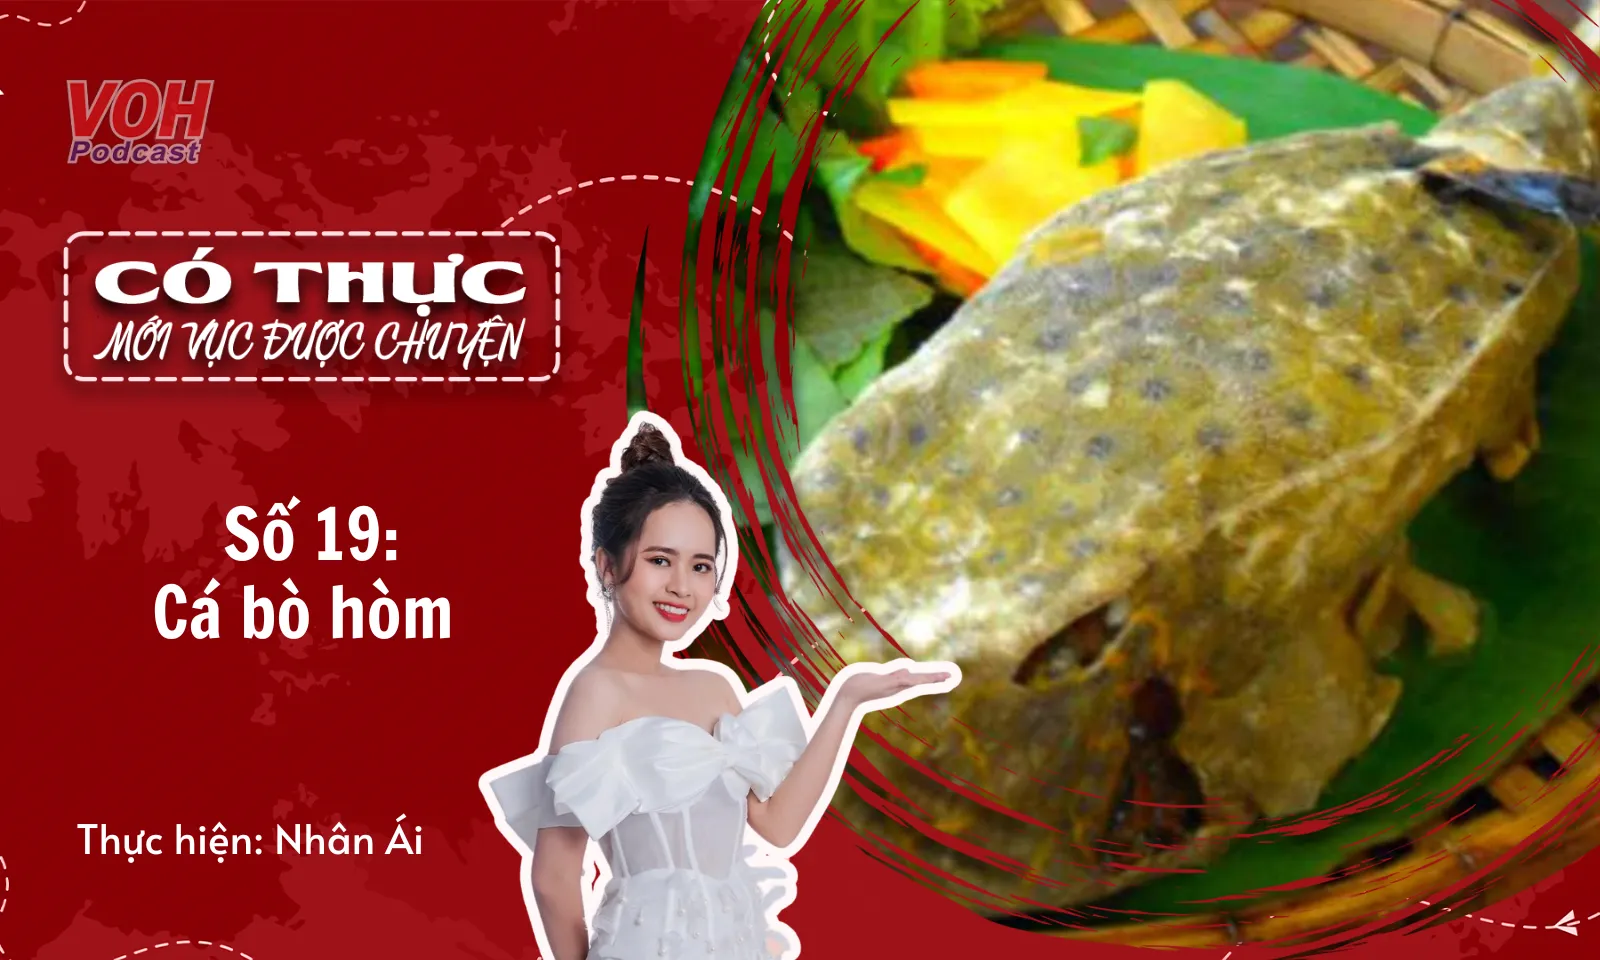 Cá bò hòm - Món gà nước mặn mang hương vị biển Phú Yên | CTMVDC #19